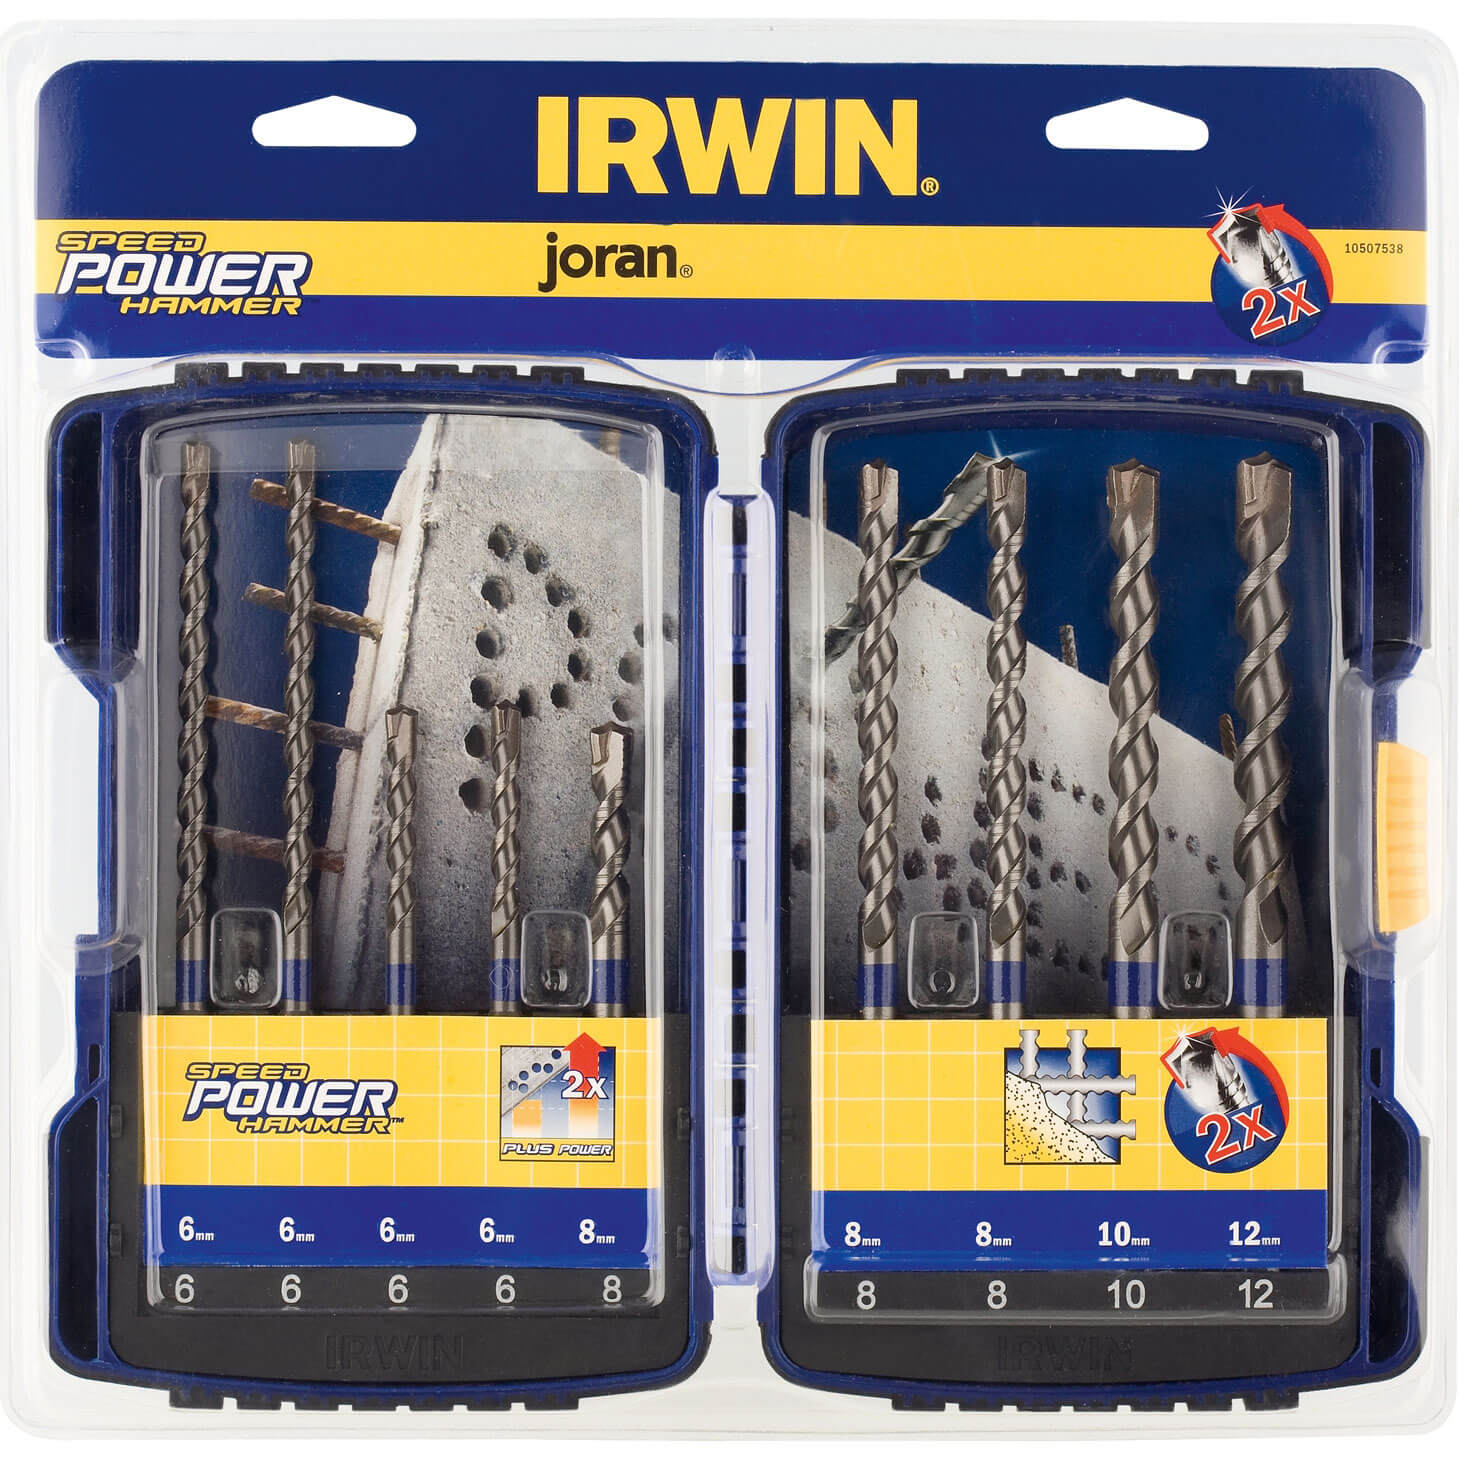 Irwin 9 Piece Speedhammer SDS Plus Drill Bit Set 6 - 12mm